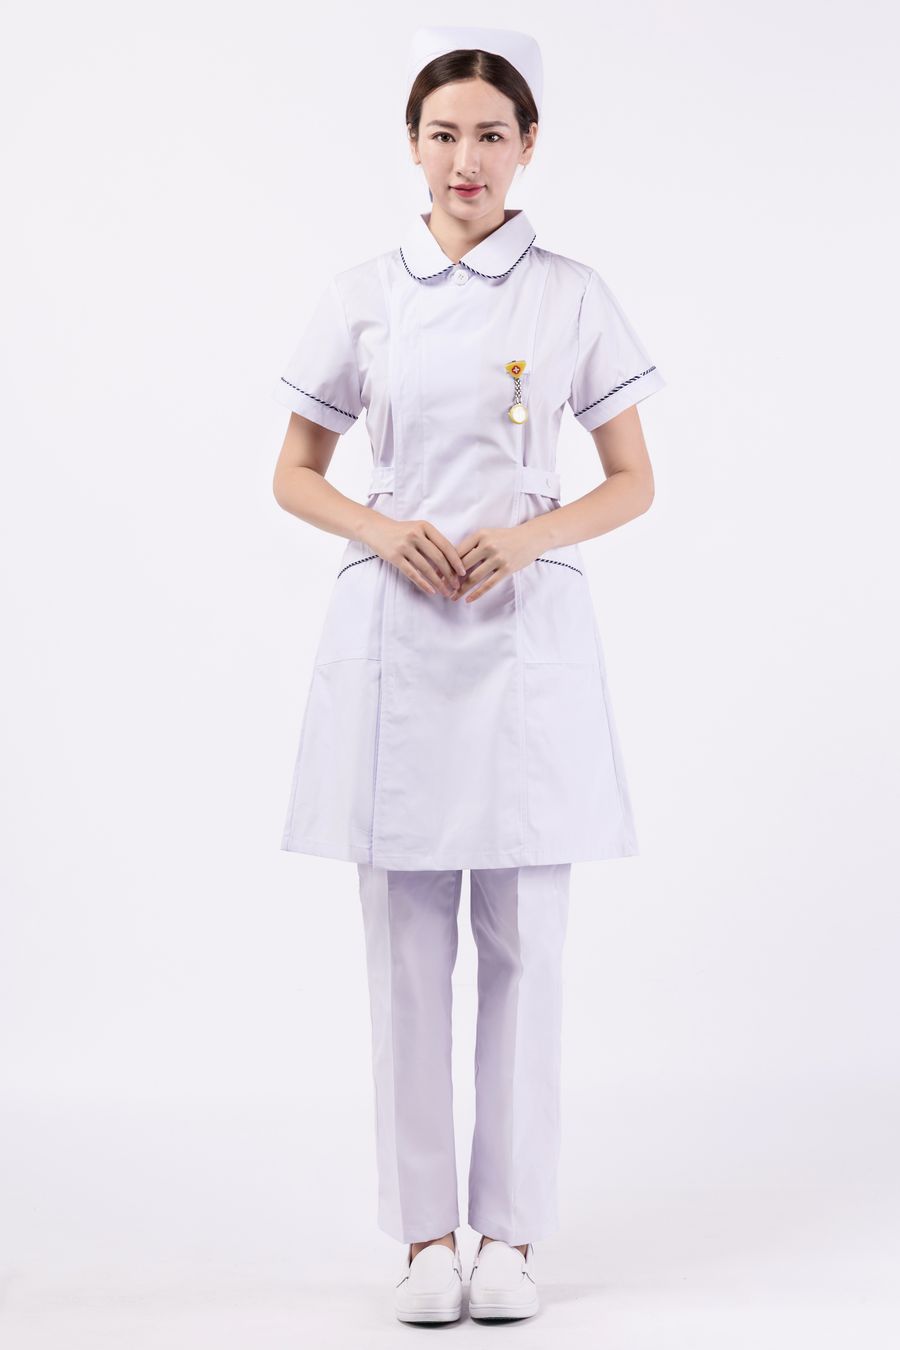 如何选择正规的护士服装生产厂家